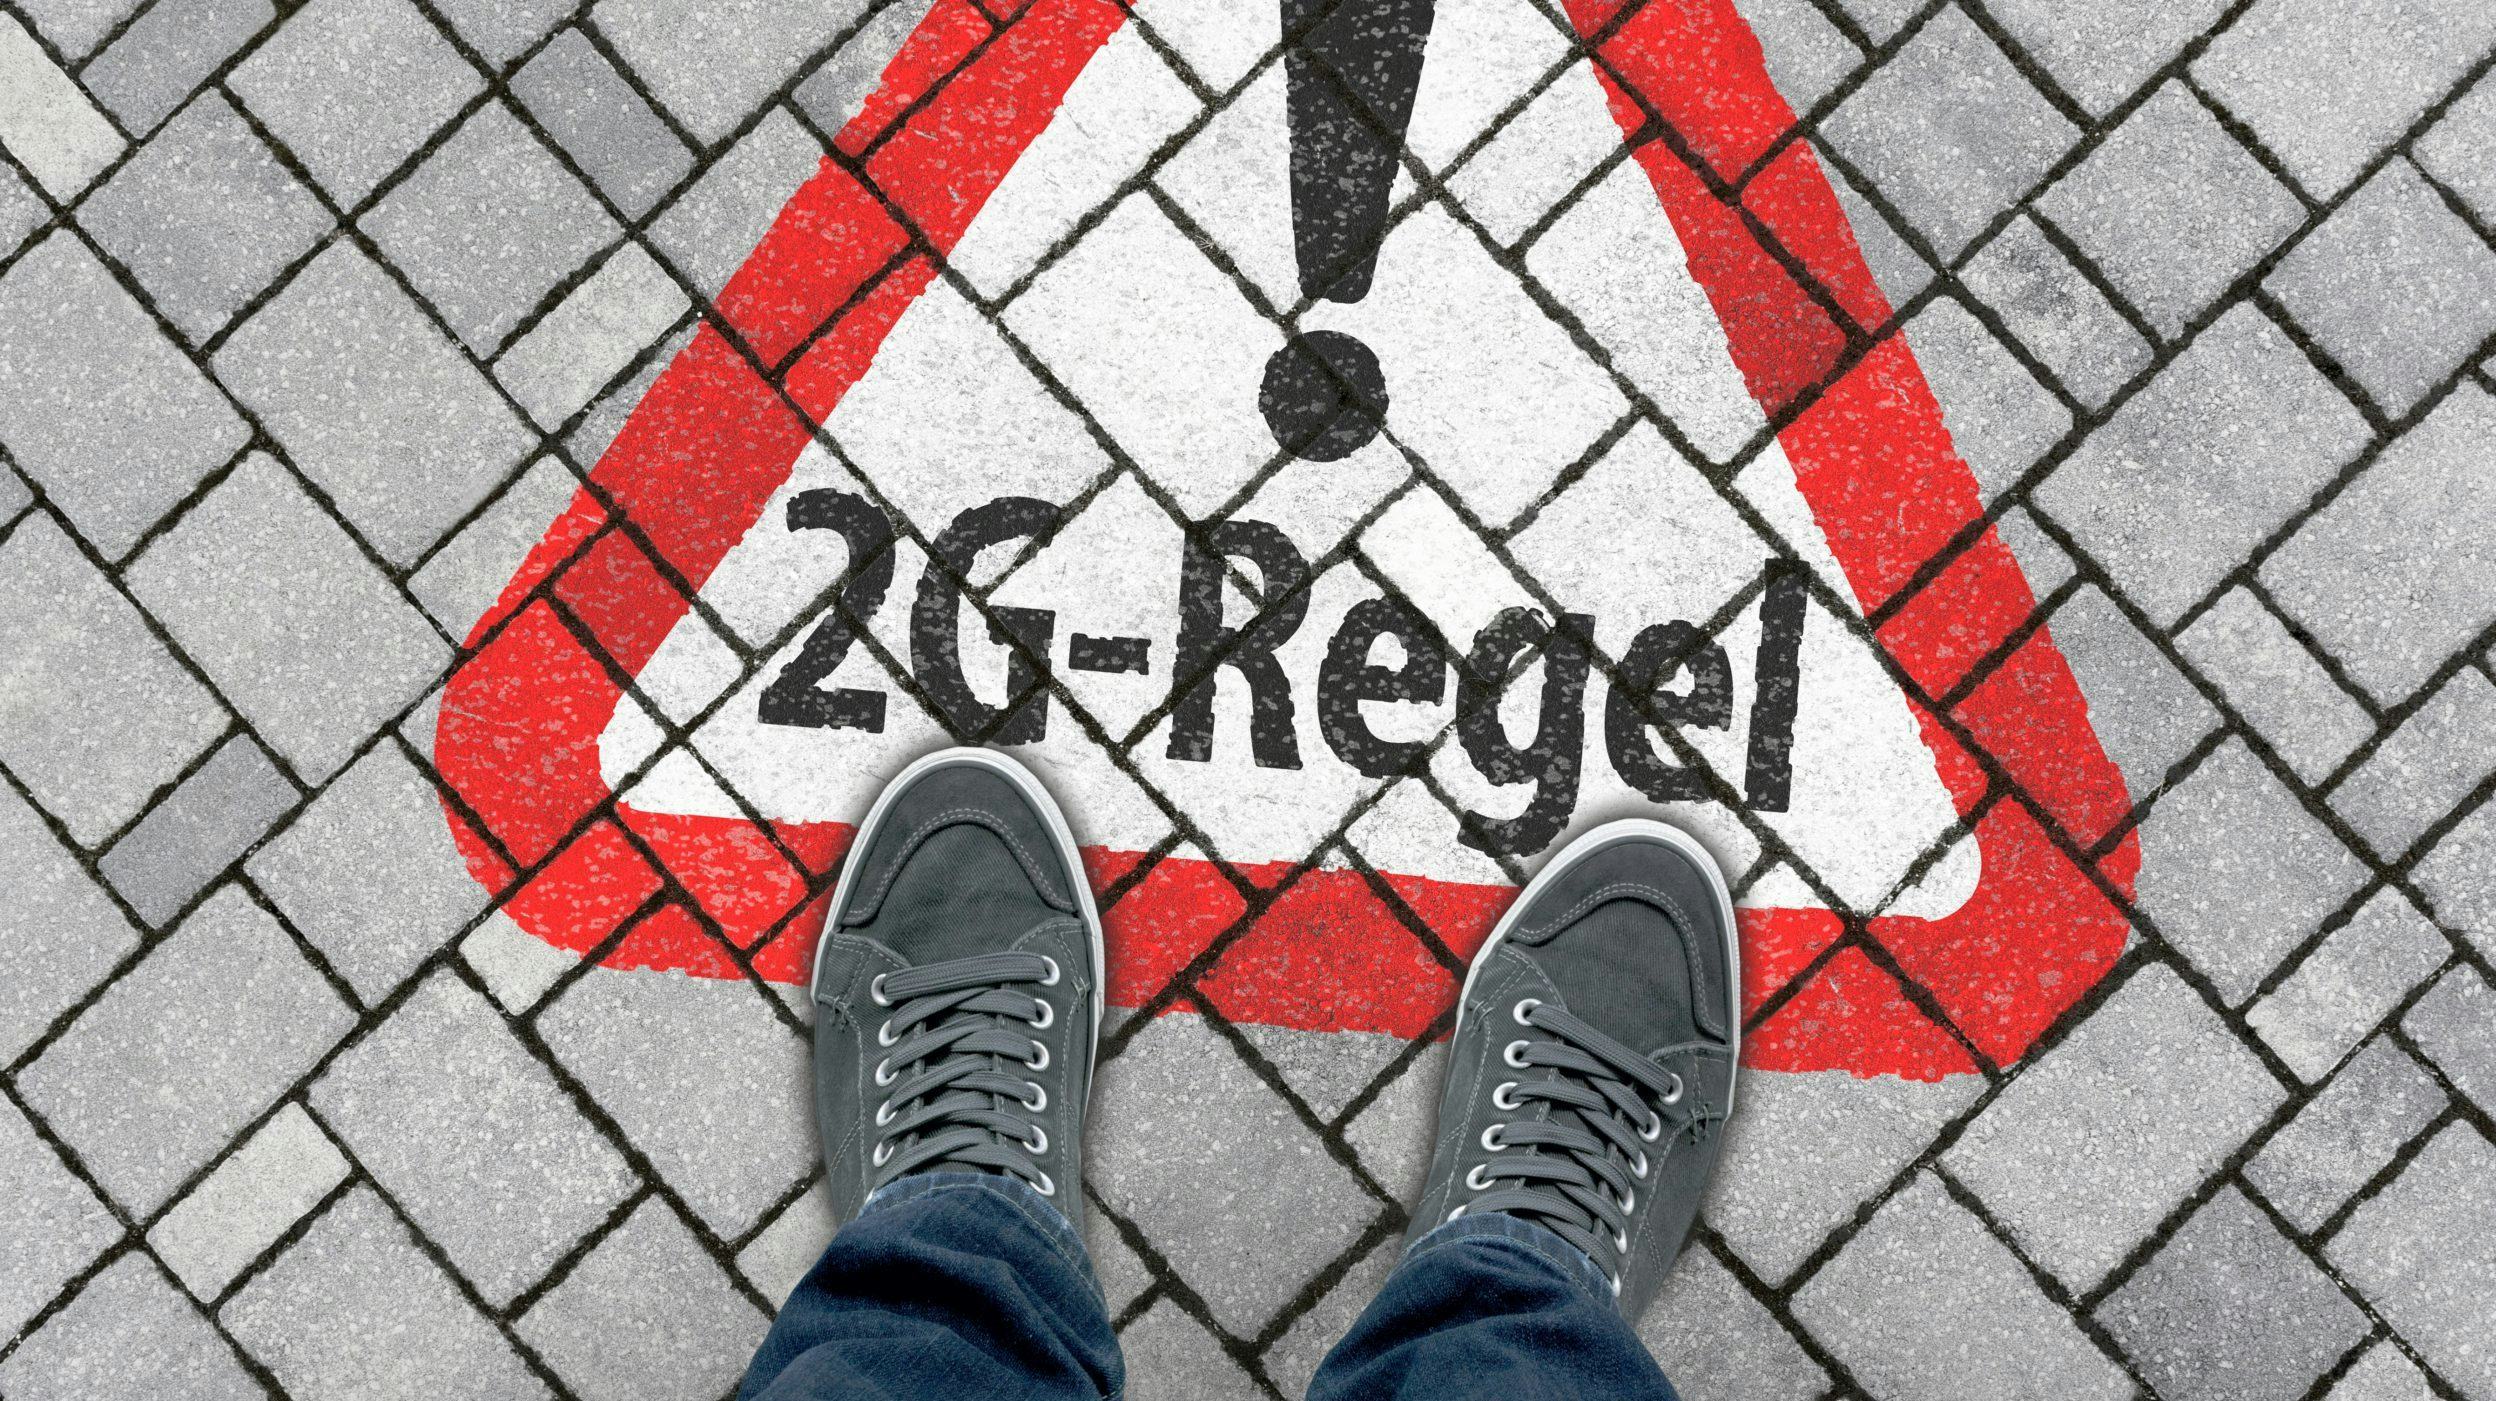 Media: Duitse overheid wil 2G-plus voor horecabezoek